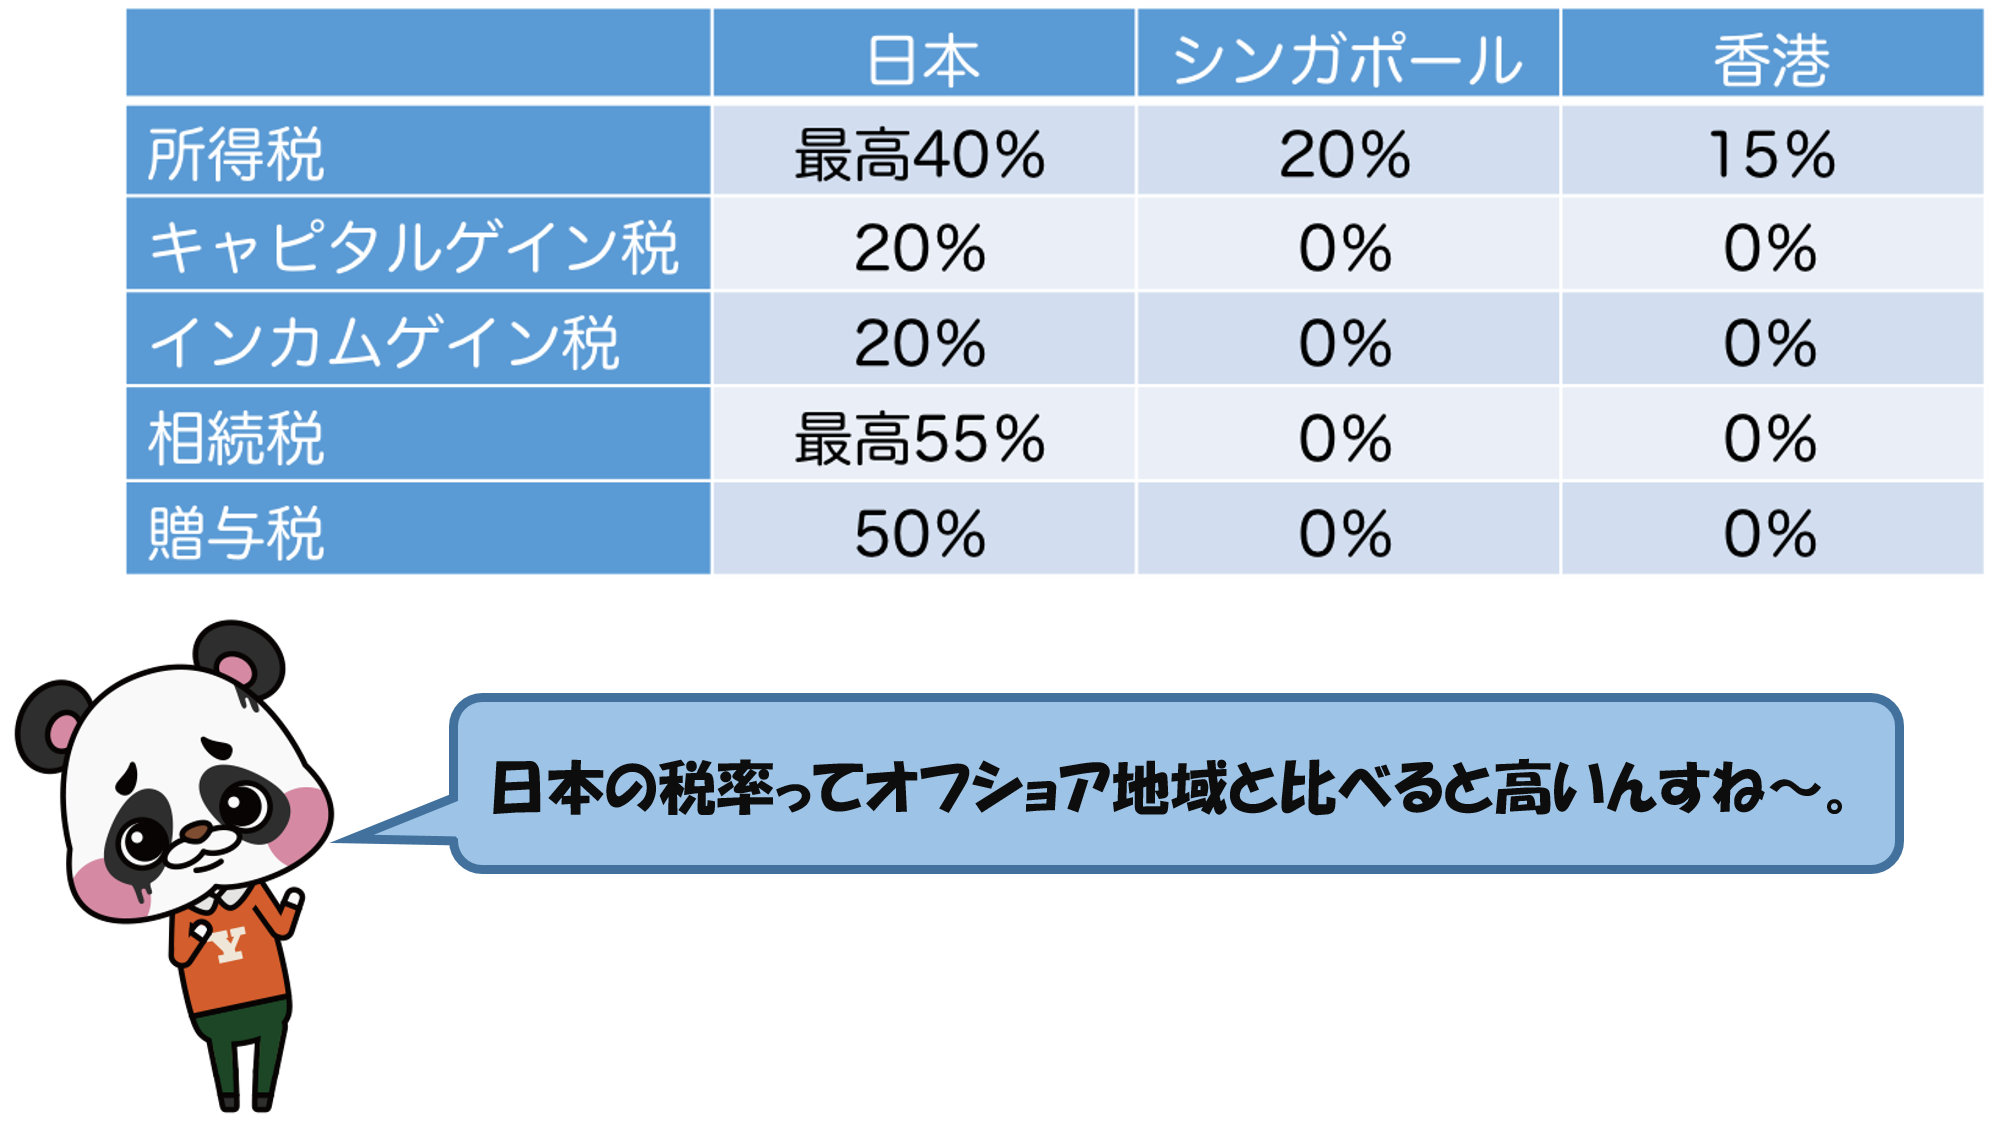 オフショア地域と日本の税率比較